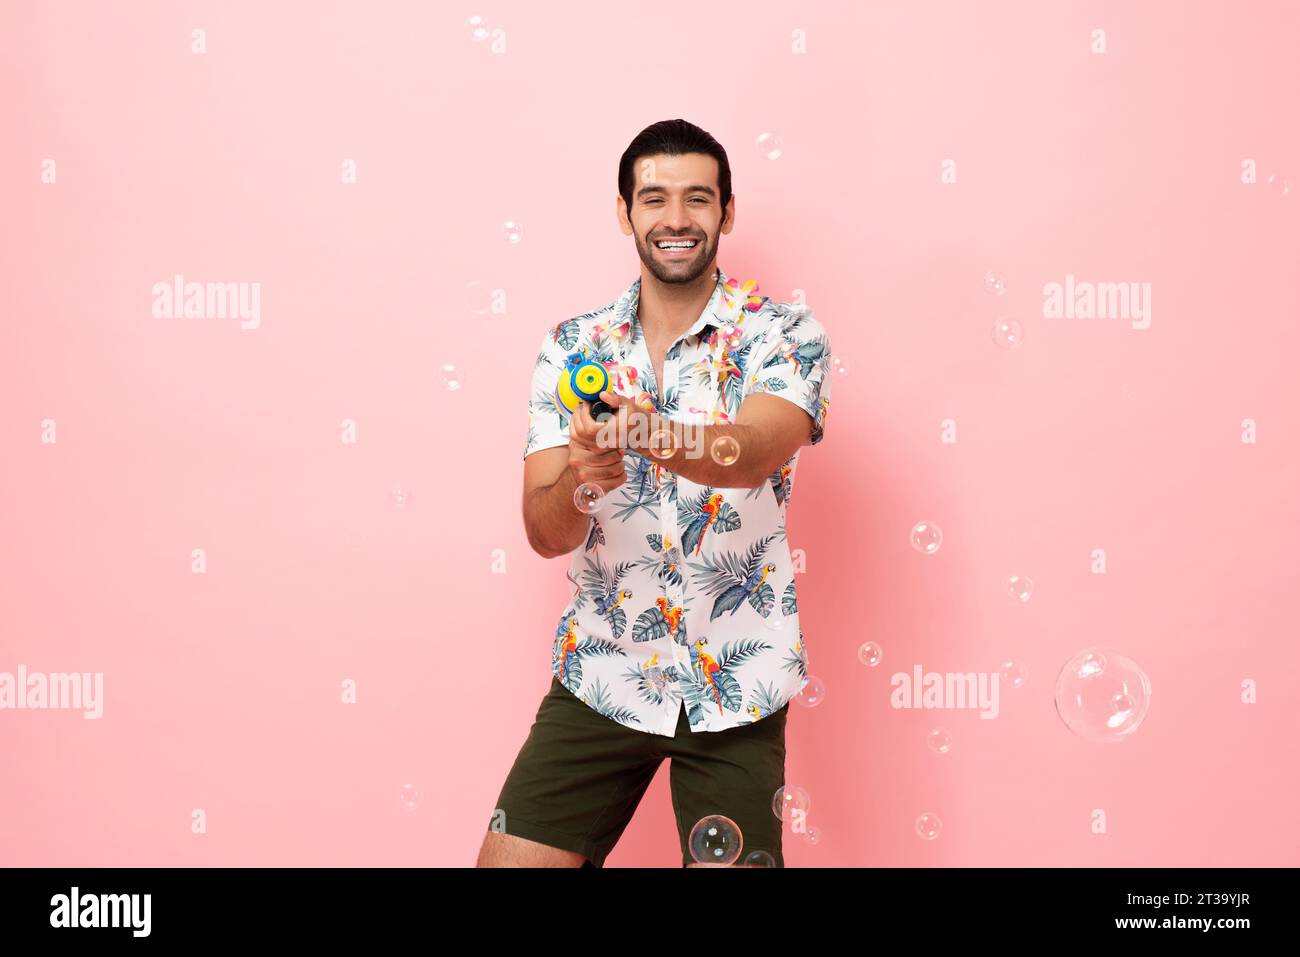 Fröhlich lächelnder junger kaukasischer Touristenmann, der mit Wasserpistole im rosa Studiohintergrund für das Songkran Festival Konzept in Thailand und Südosten spielt Stockfoto